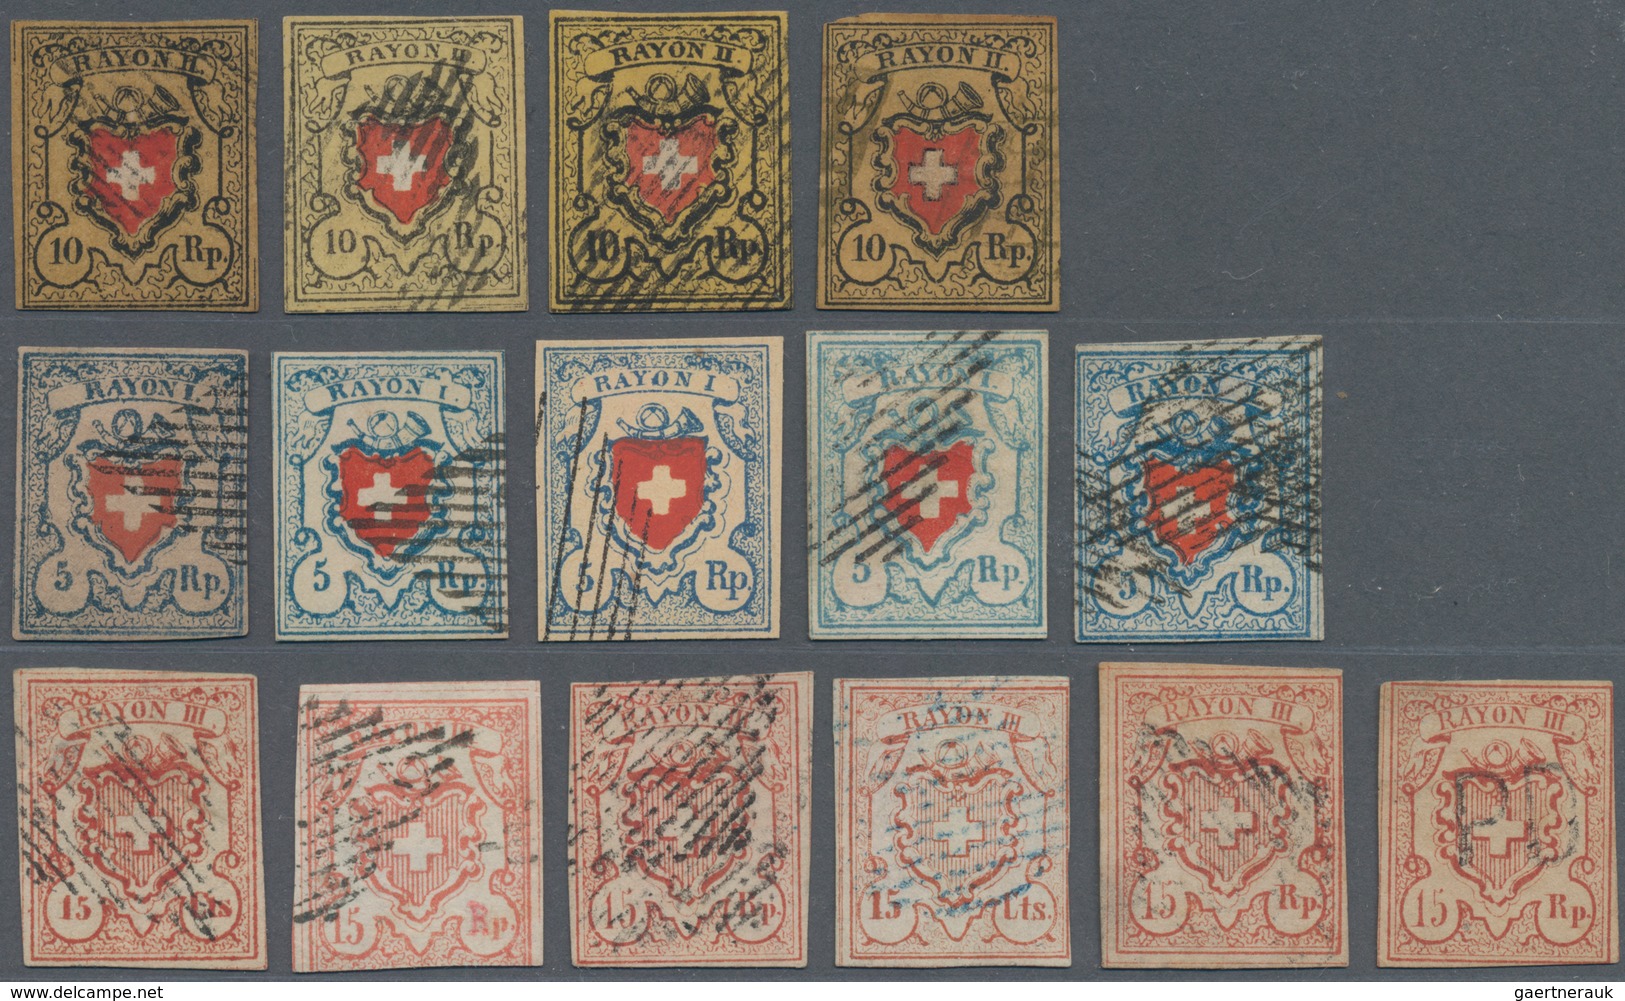 Schweiz: 1850-52: 32 Imitationen/Nachahmungen/Fälschungen Von Durheim-Marken (Ortspost Bis Rayon III - Sammlungen